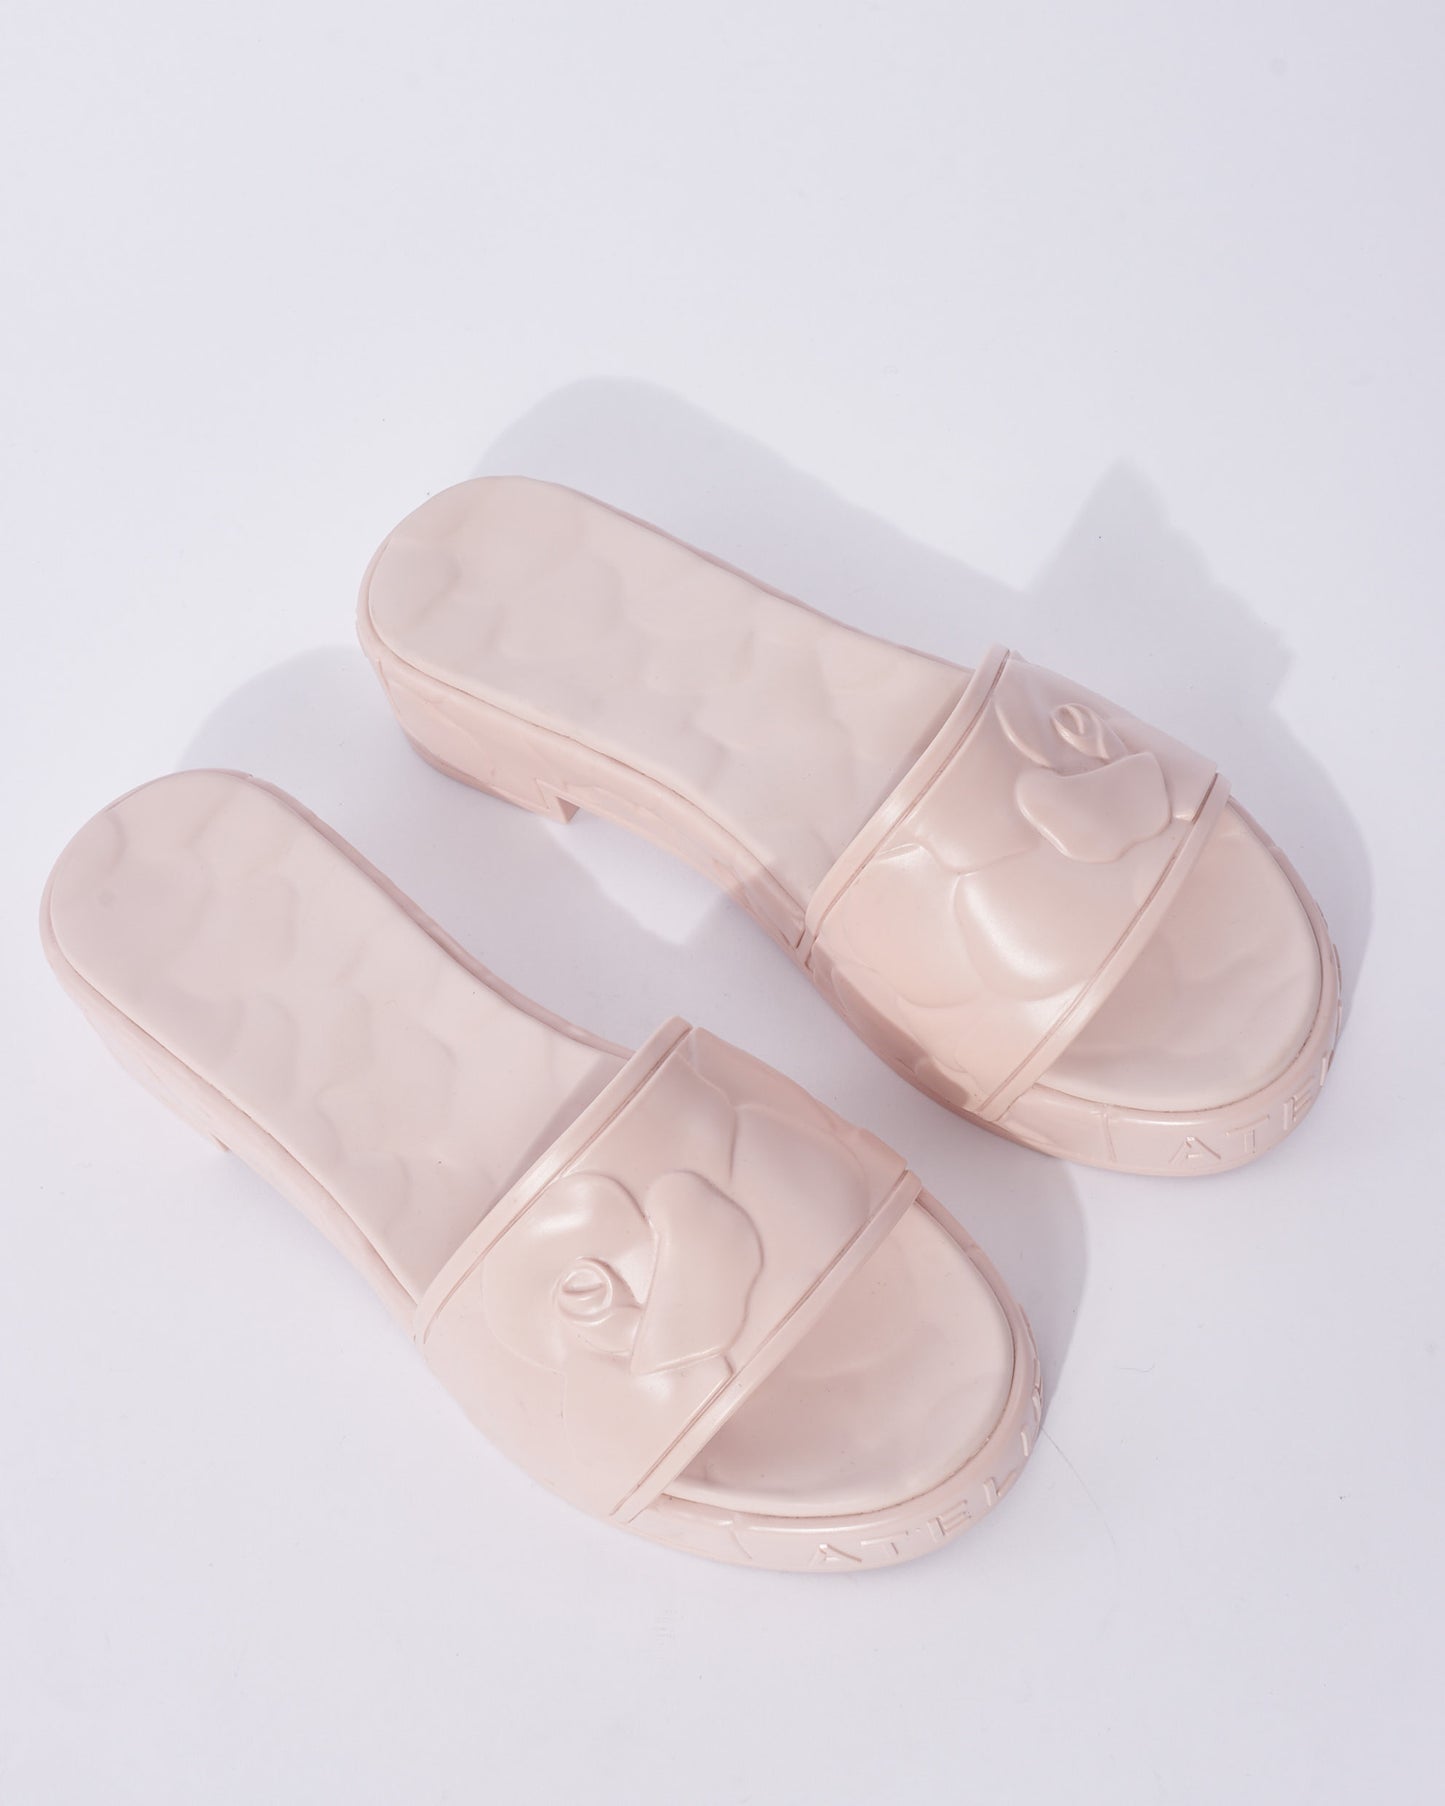 Valentino Atelier Pink Floral Rubber Platform Slide Sandals - 38